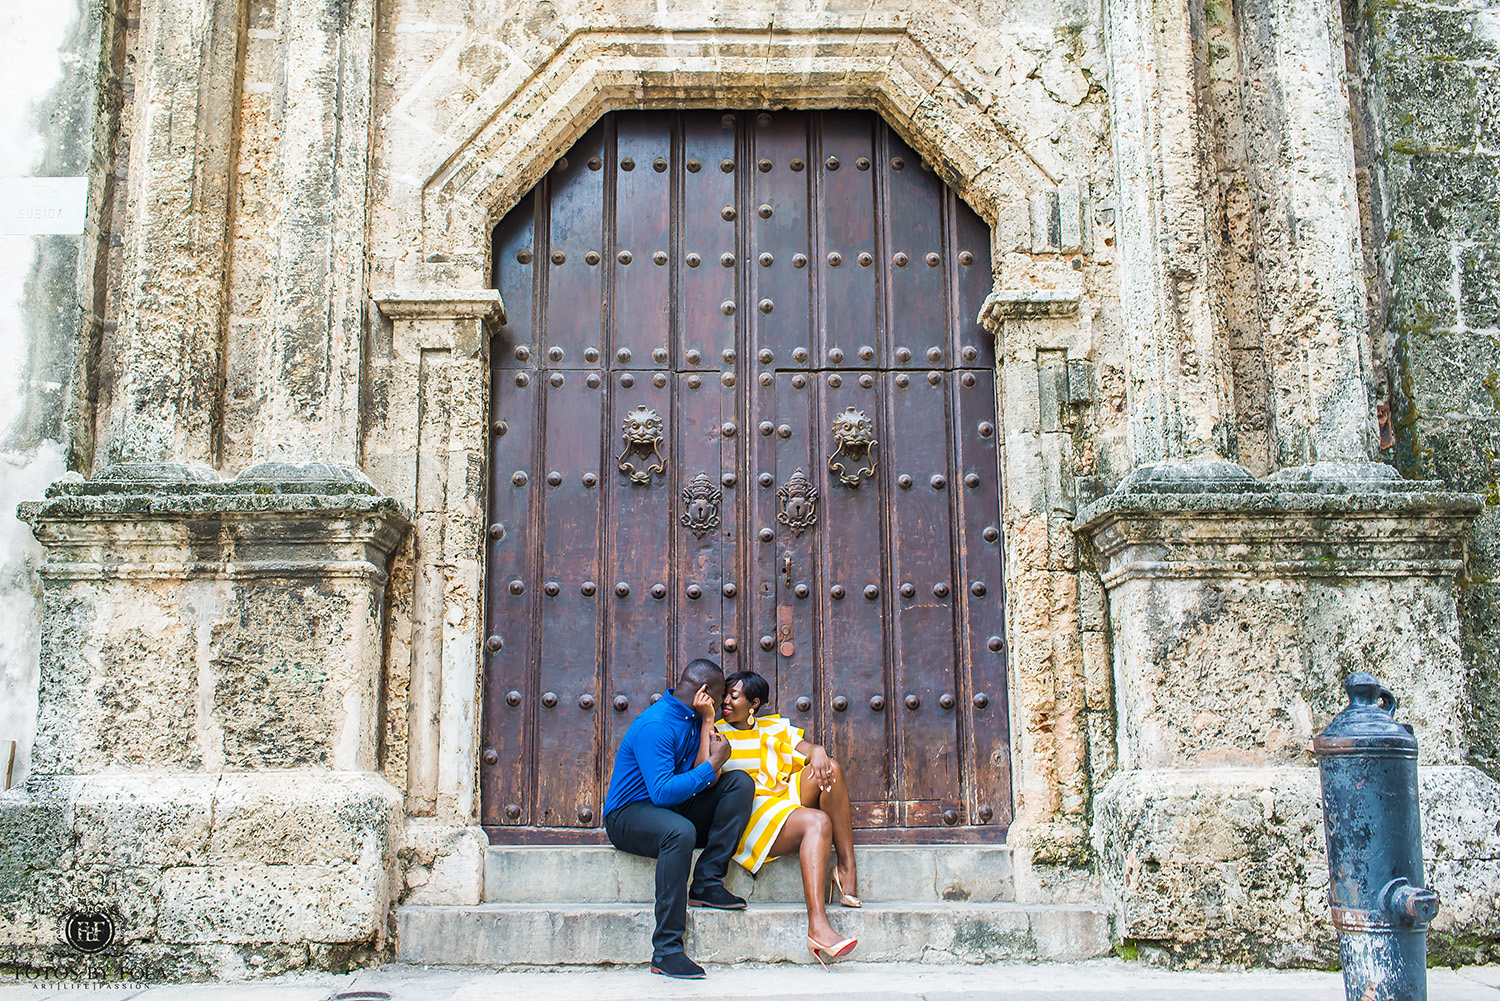 Fotos by Fola | Atlanta Wedding Photographer | Destination Wedding Photographer | Havana Cuba Engagement Shoot | La Guarida | Havana Cathedral | Santa María | Ciudad De La Habana | Cuba | Old Havana